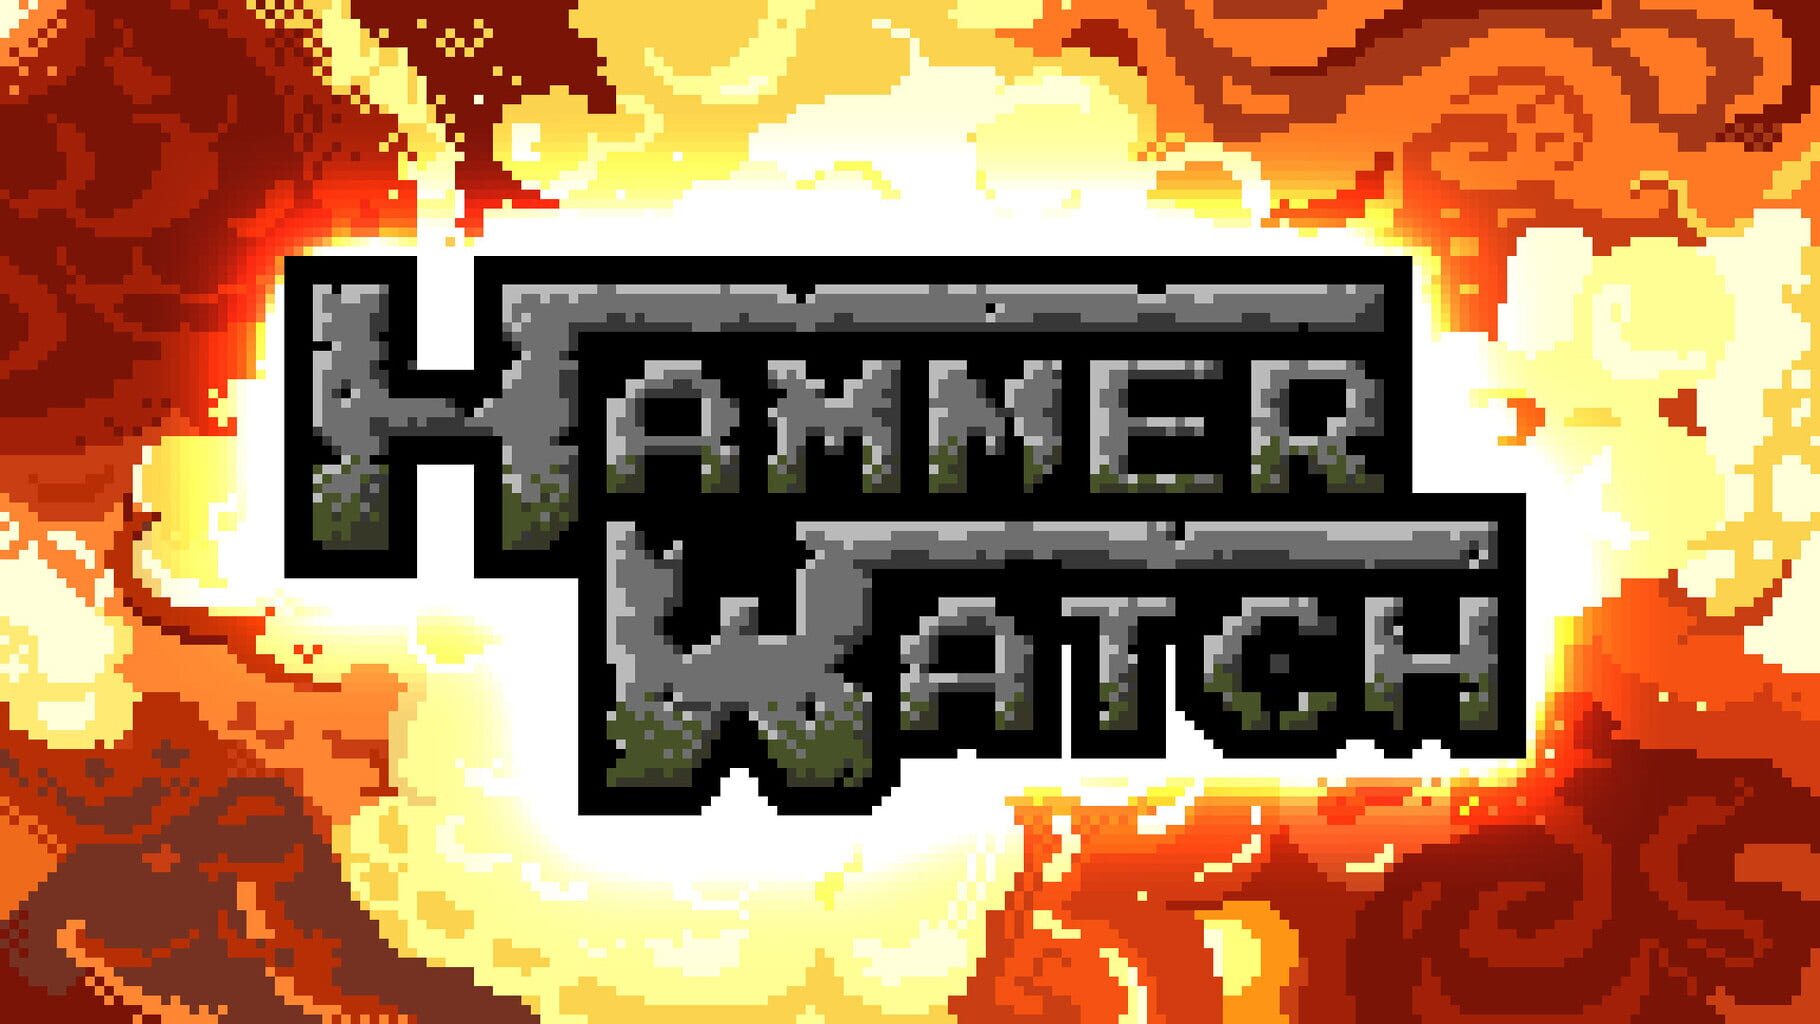 Hammerwatch artwork